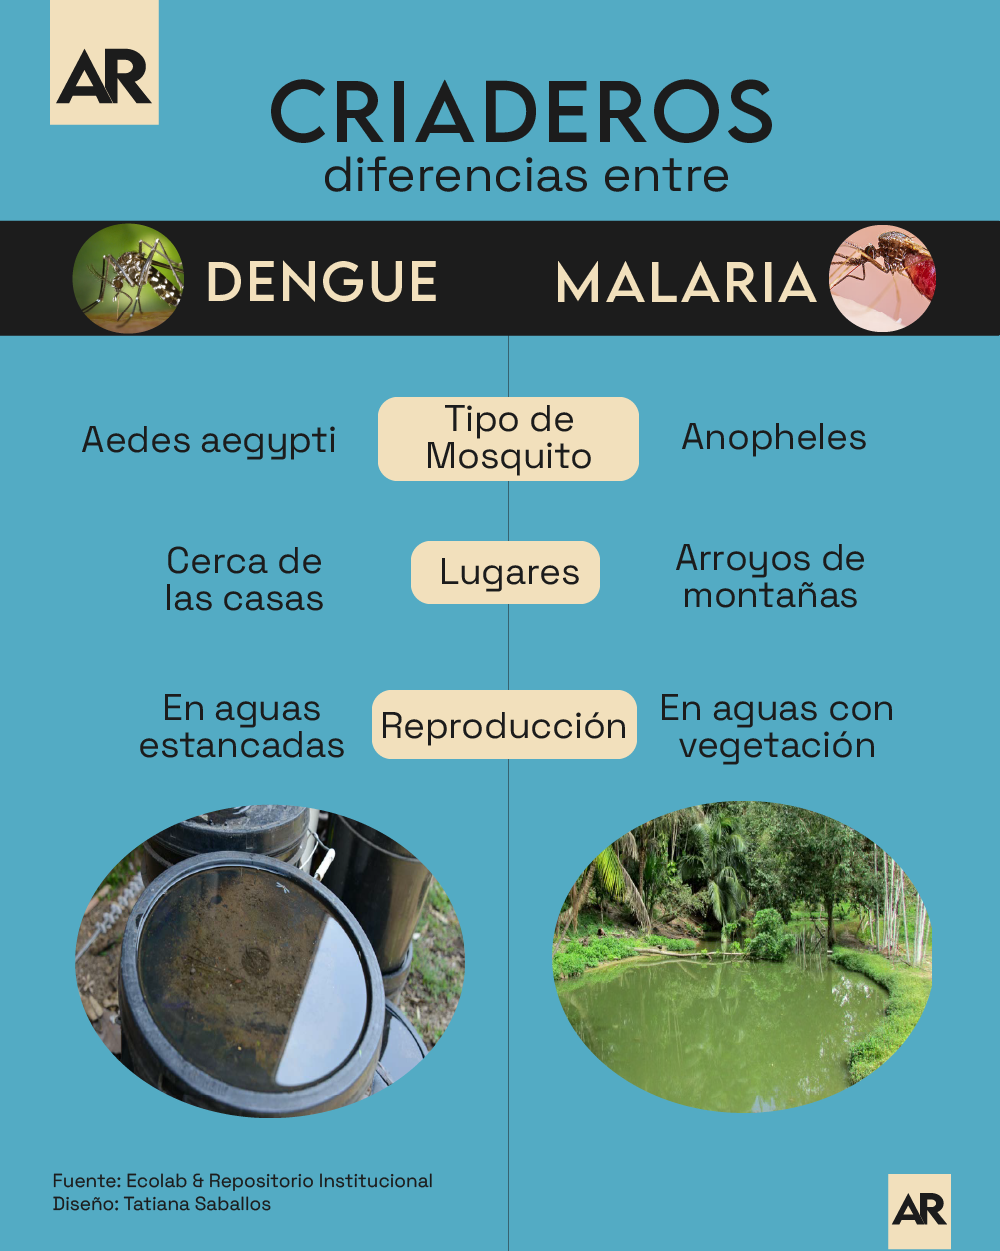 Criaderos,malaria,dengue,diferencias,infografia,noticias,Costa Rica